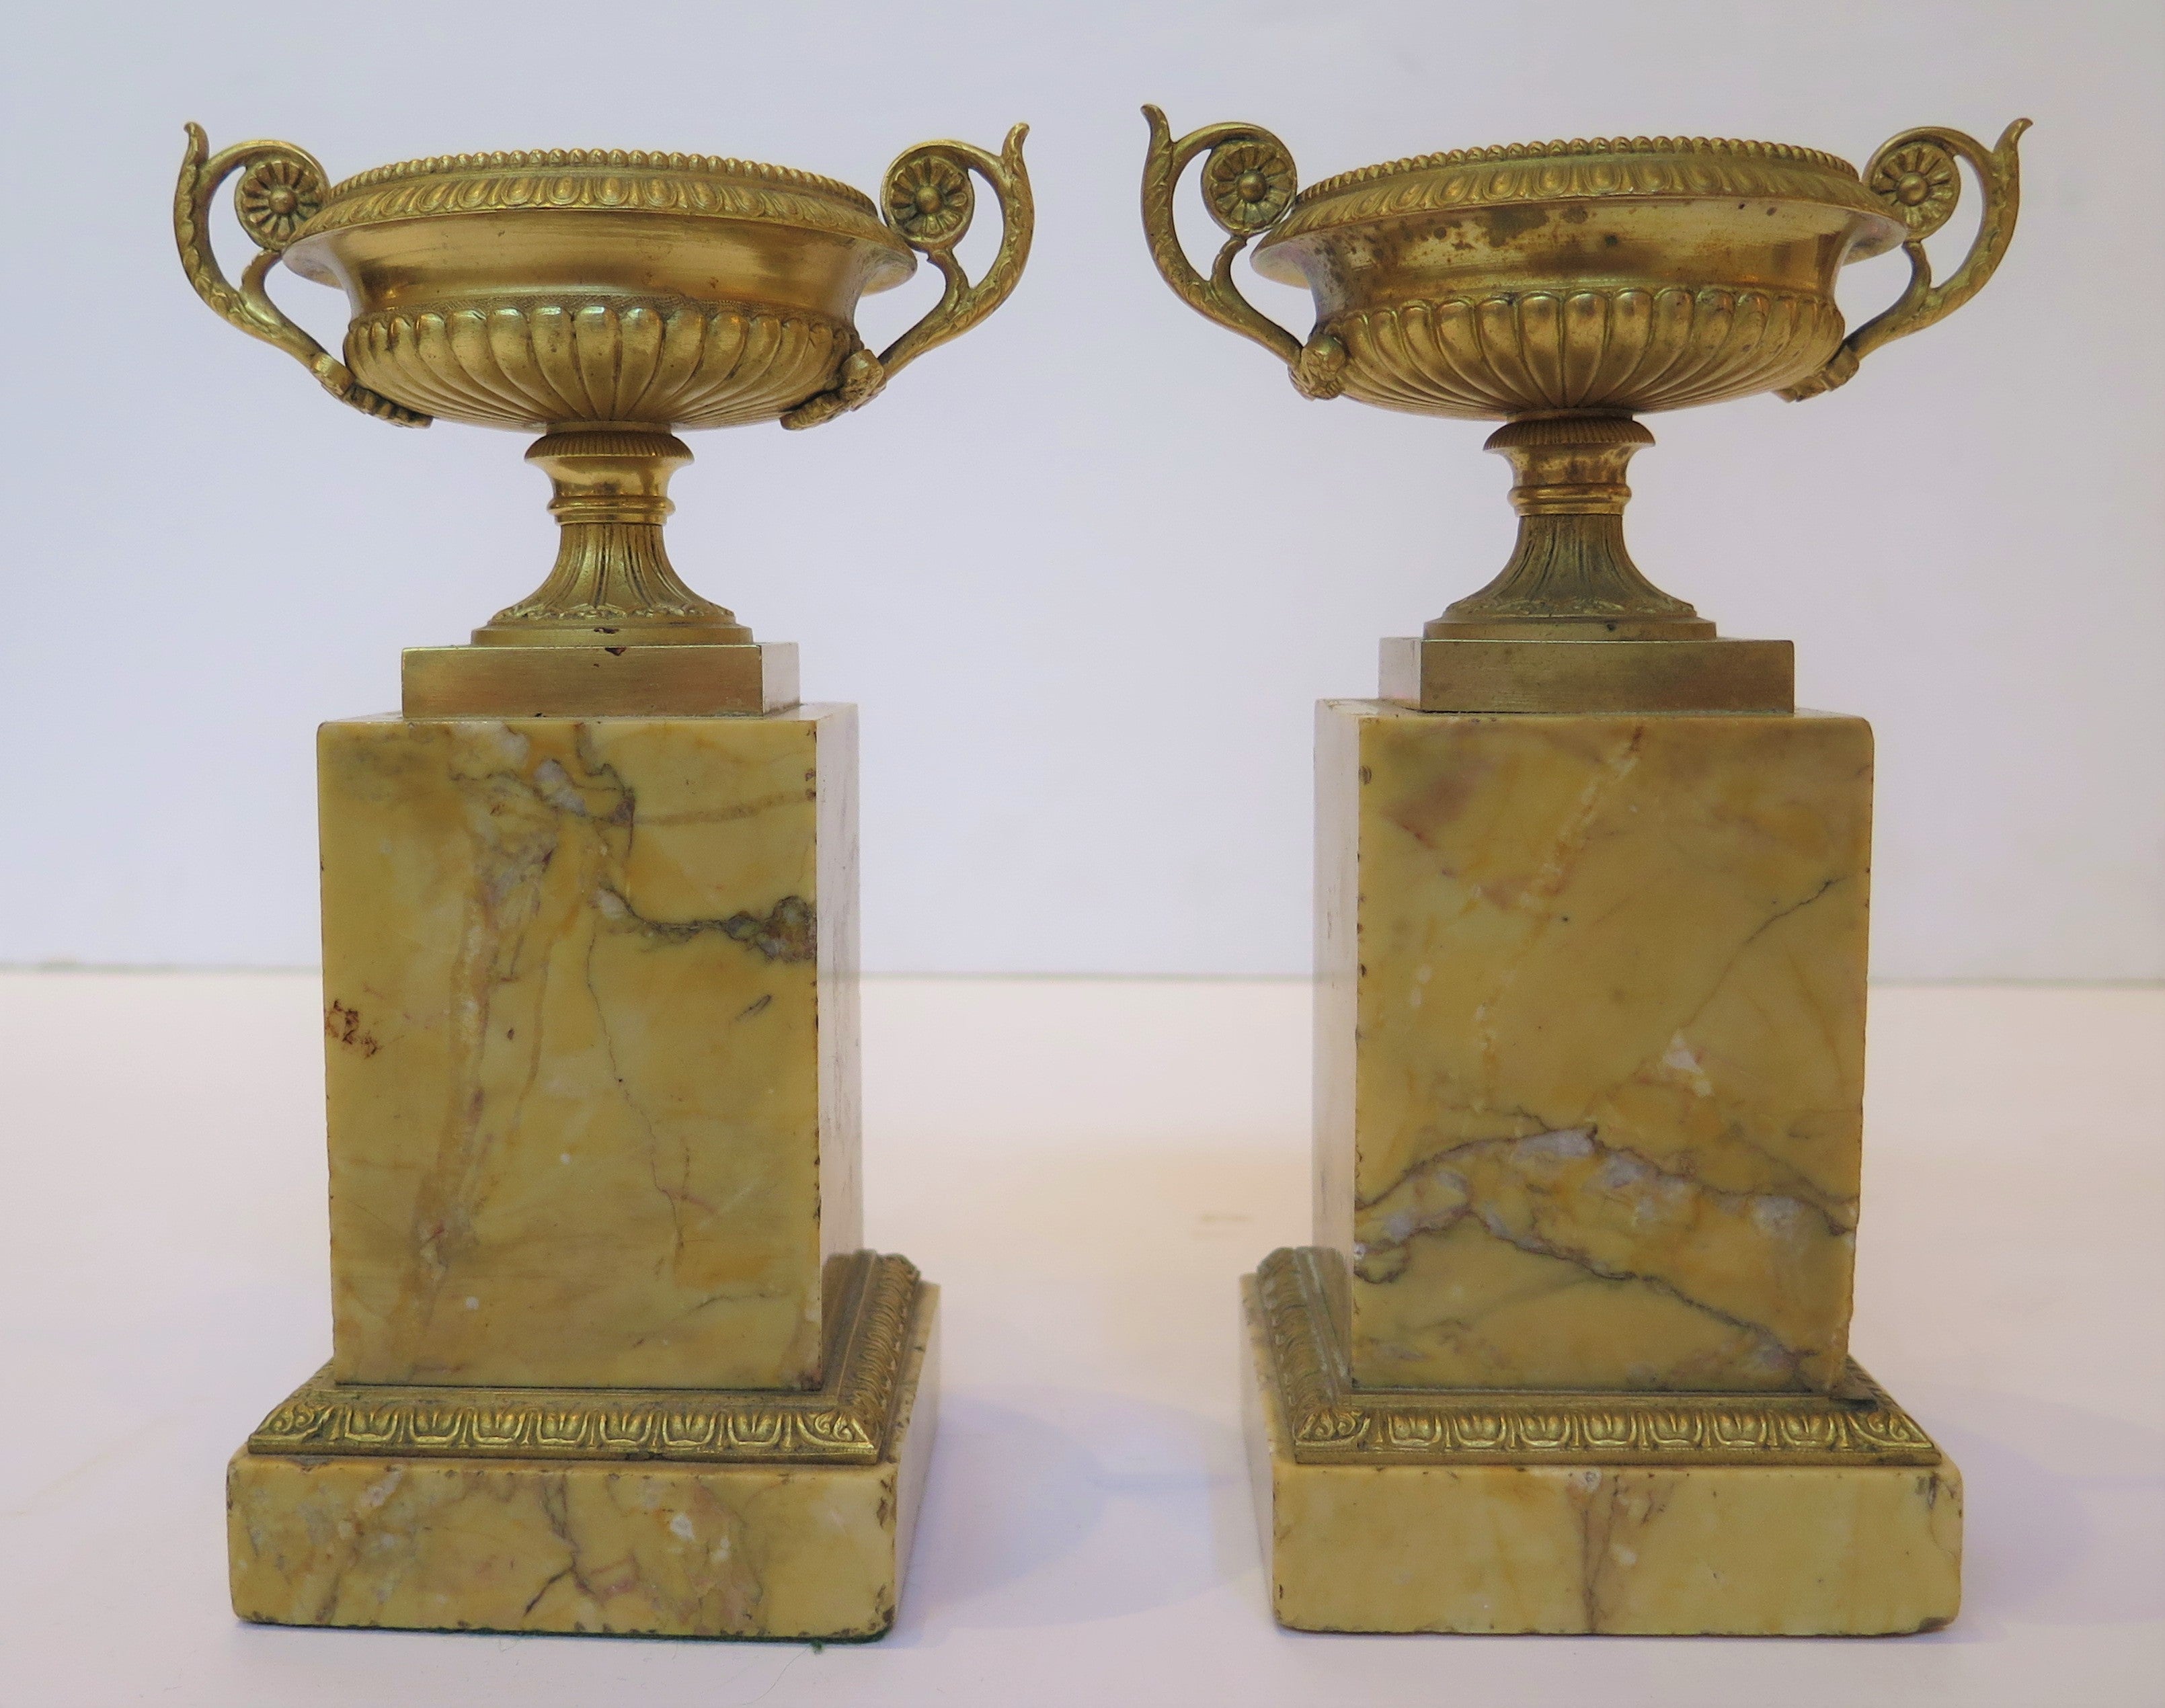 Grand Tour Souvenir Gilt Bronze Tazzas on Sienna Marble Bases